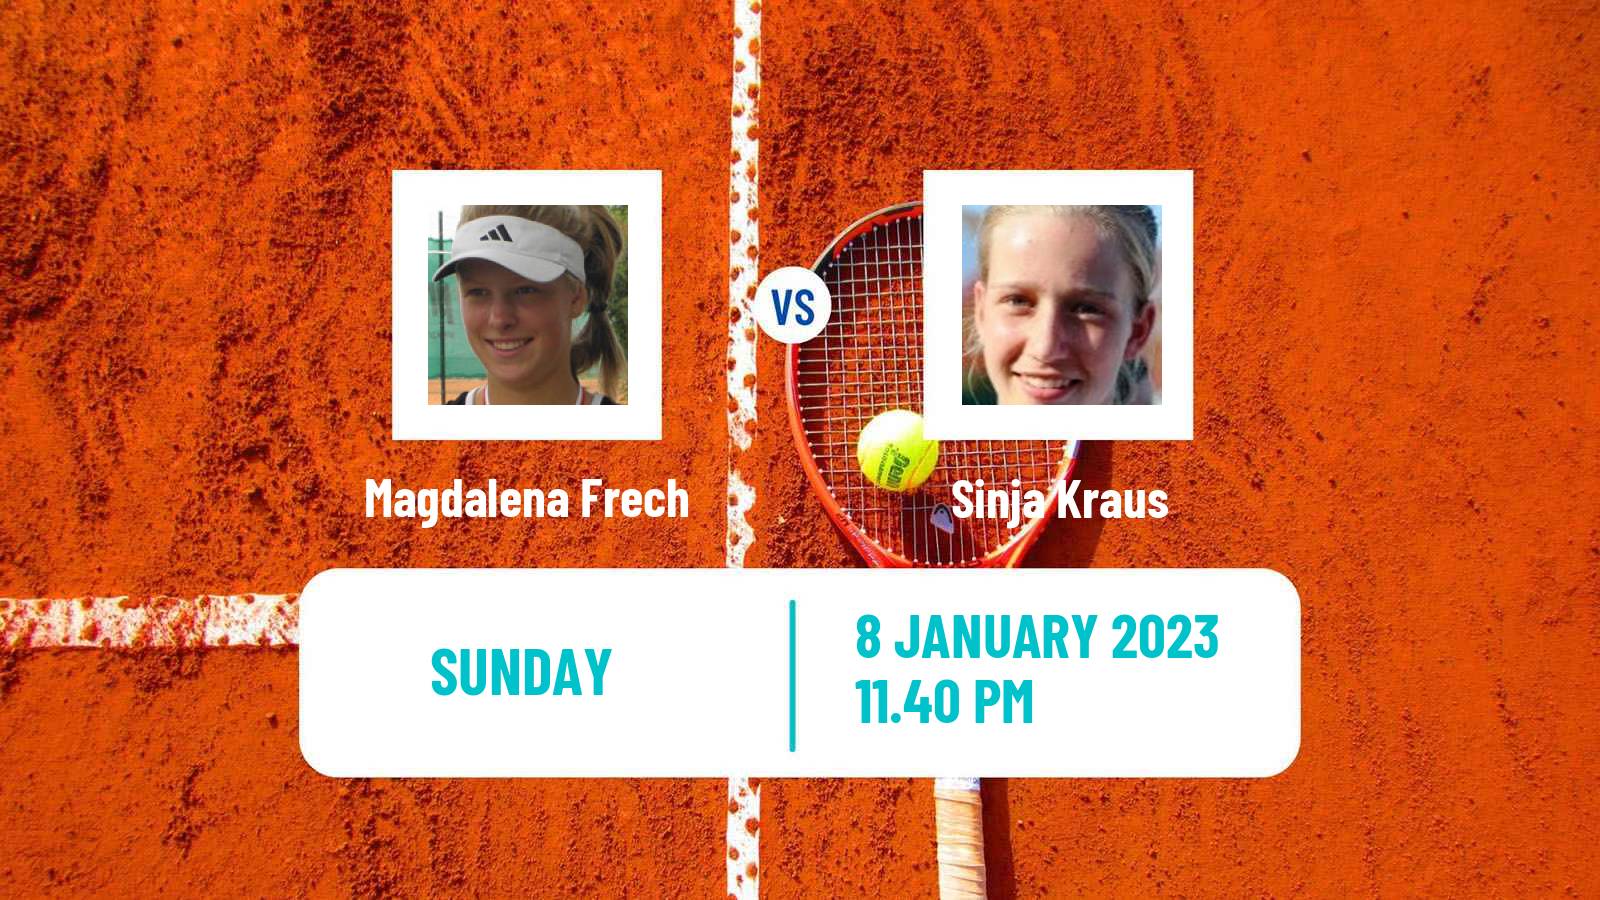 Tennis WTA Australian Open Magdalena Frech - Sinja Kraus